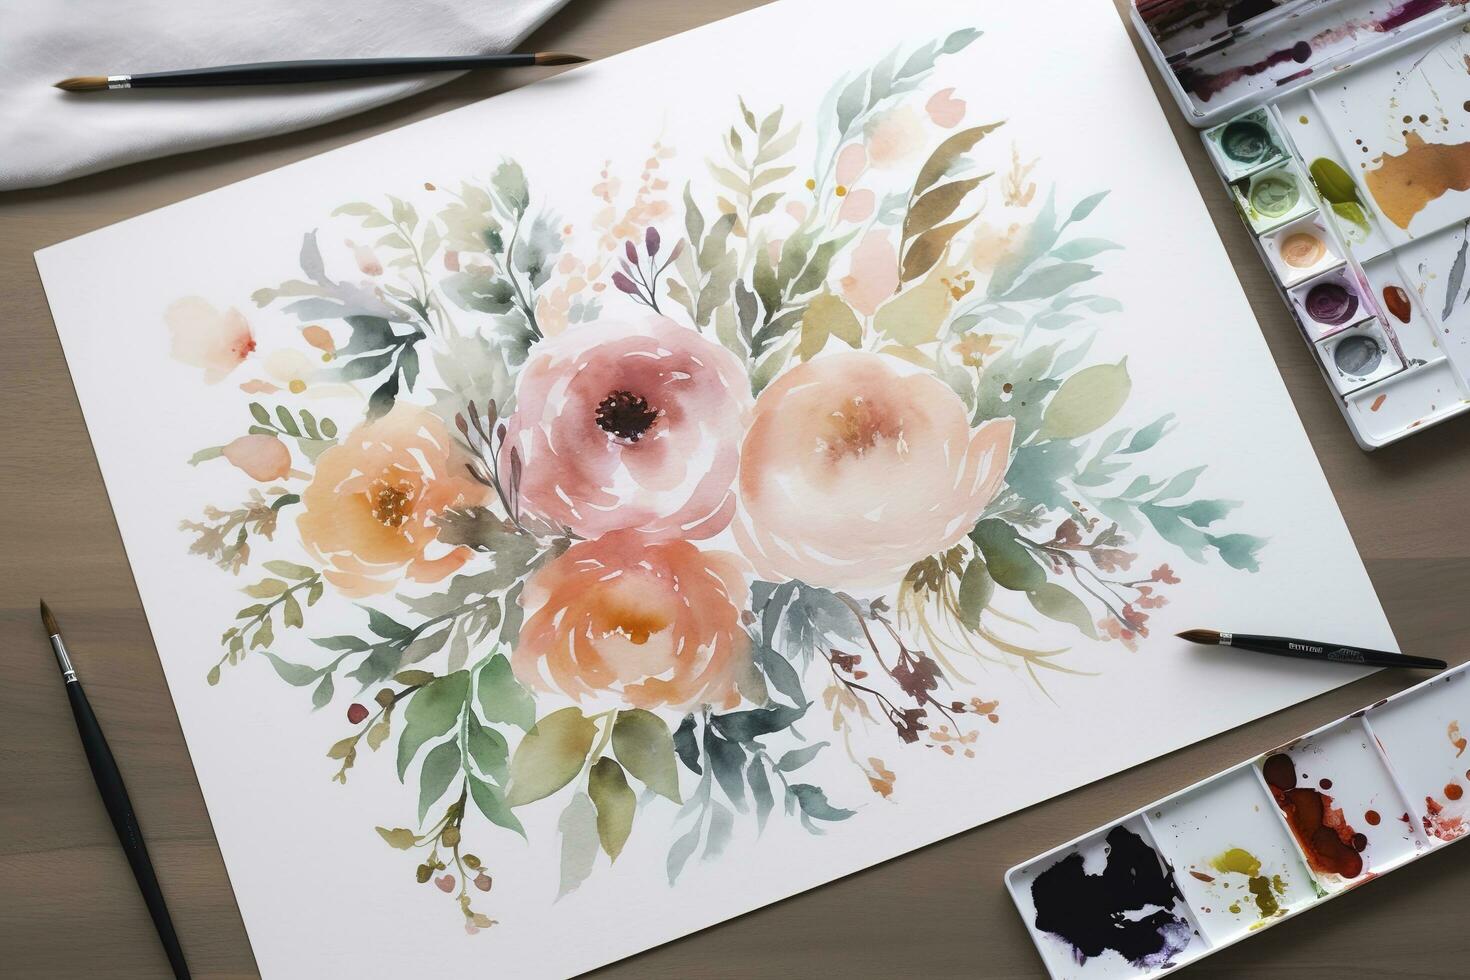 måla en serier av vattenfärg blommor i annorlunda stadier av blomning, från en tajt knopp till en fullt öppen blomma, generera ai foto